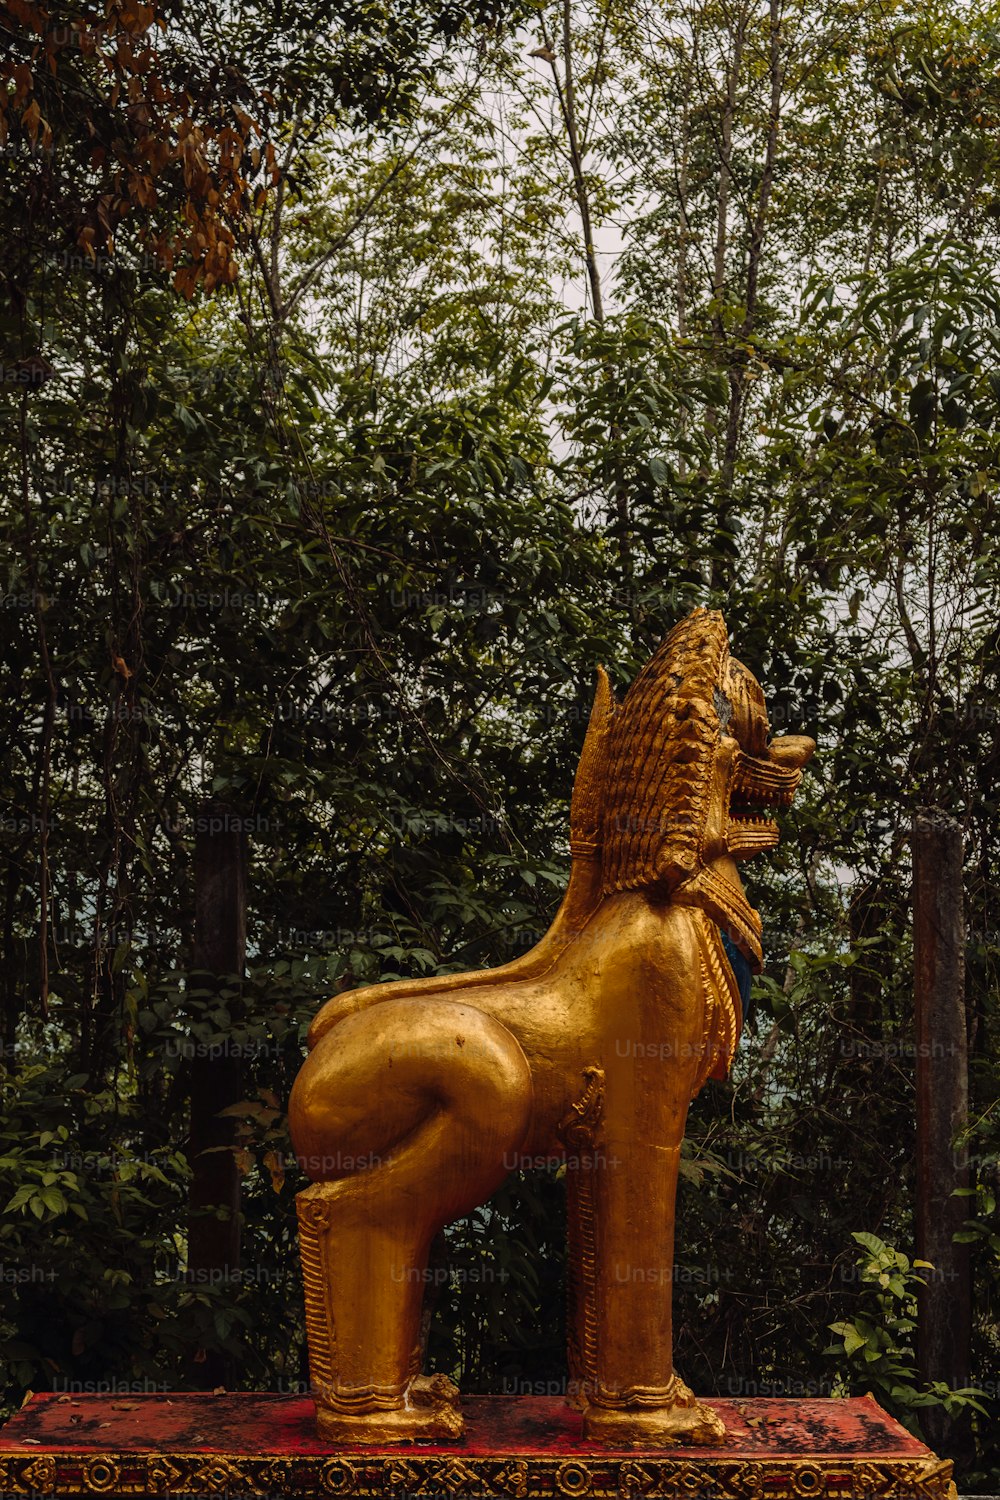 Una statua di leone dorato seduta in cima a una scatola rossa